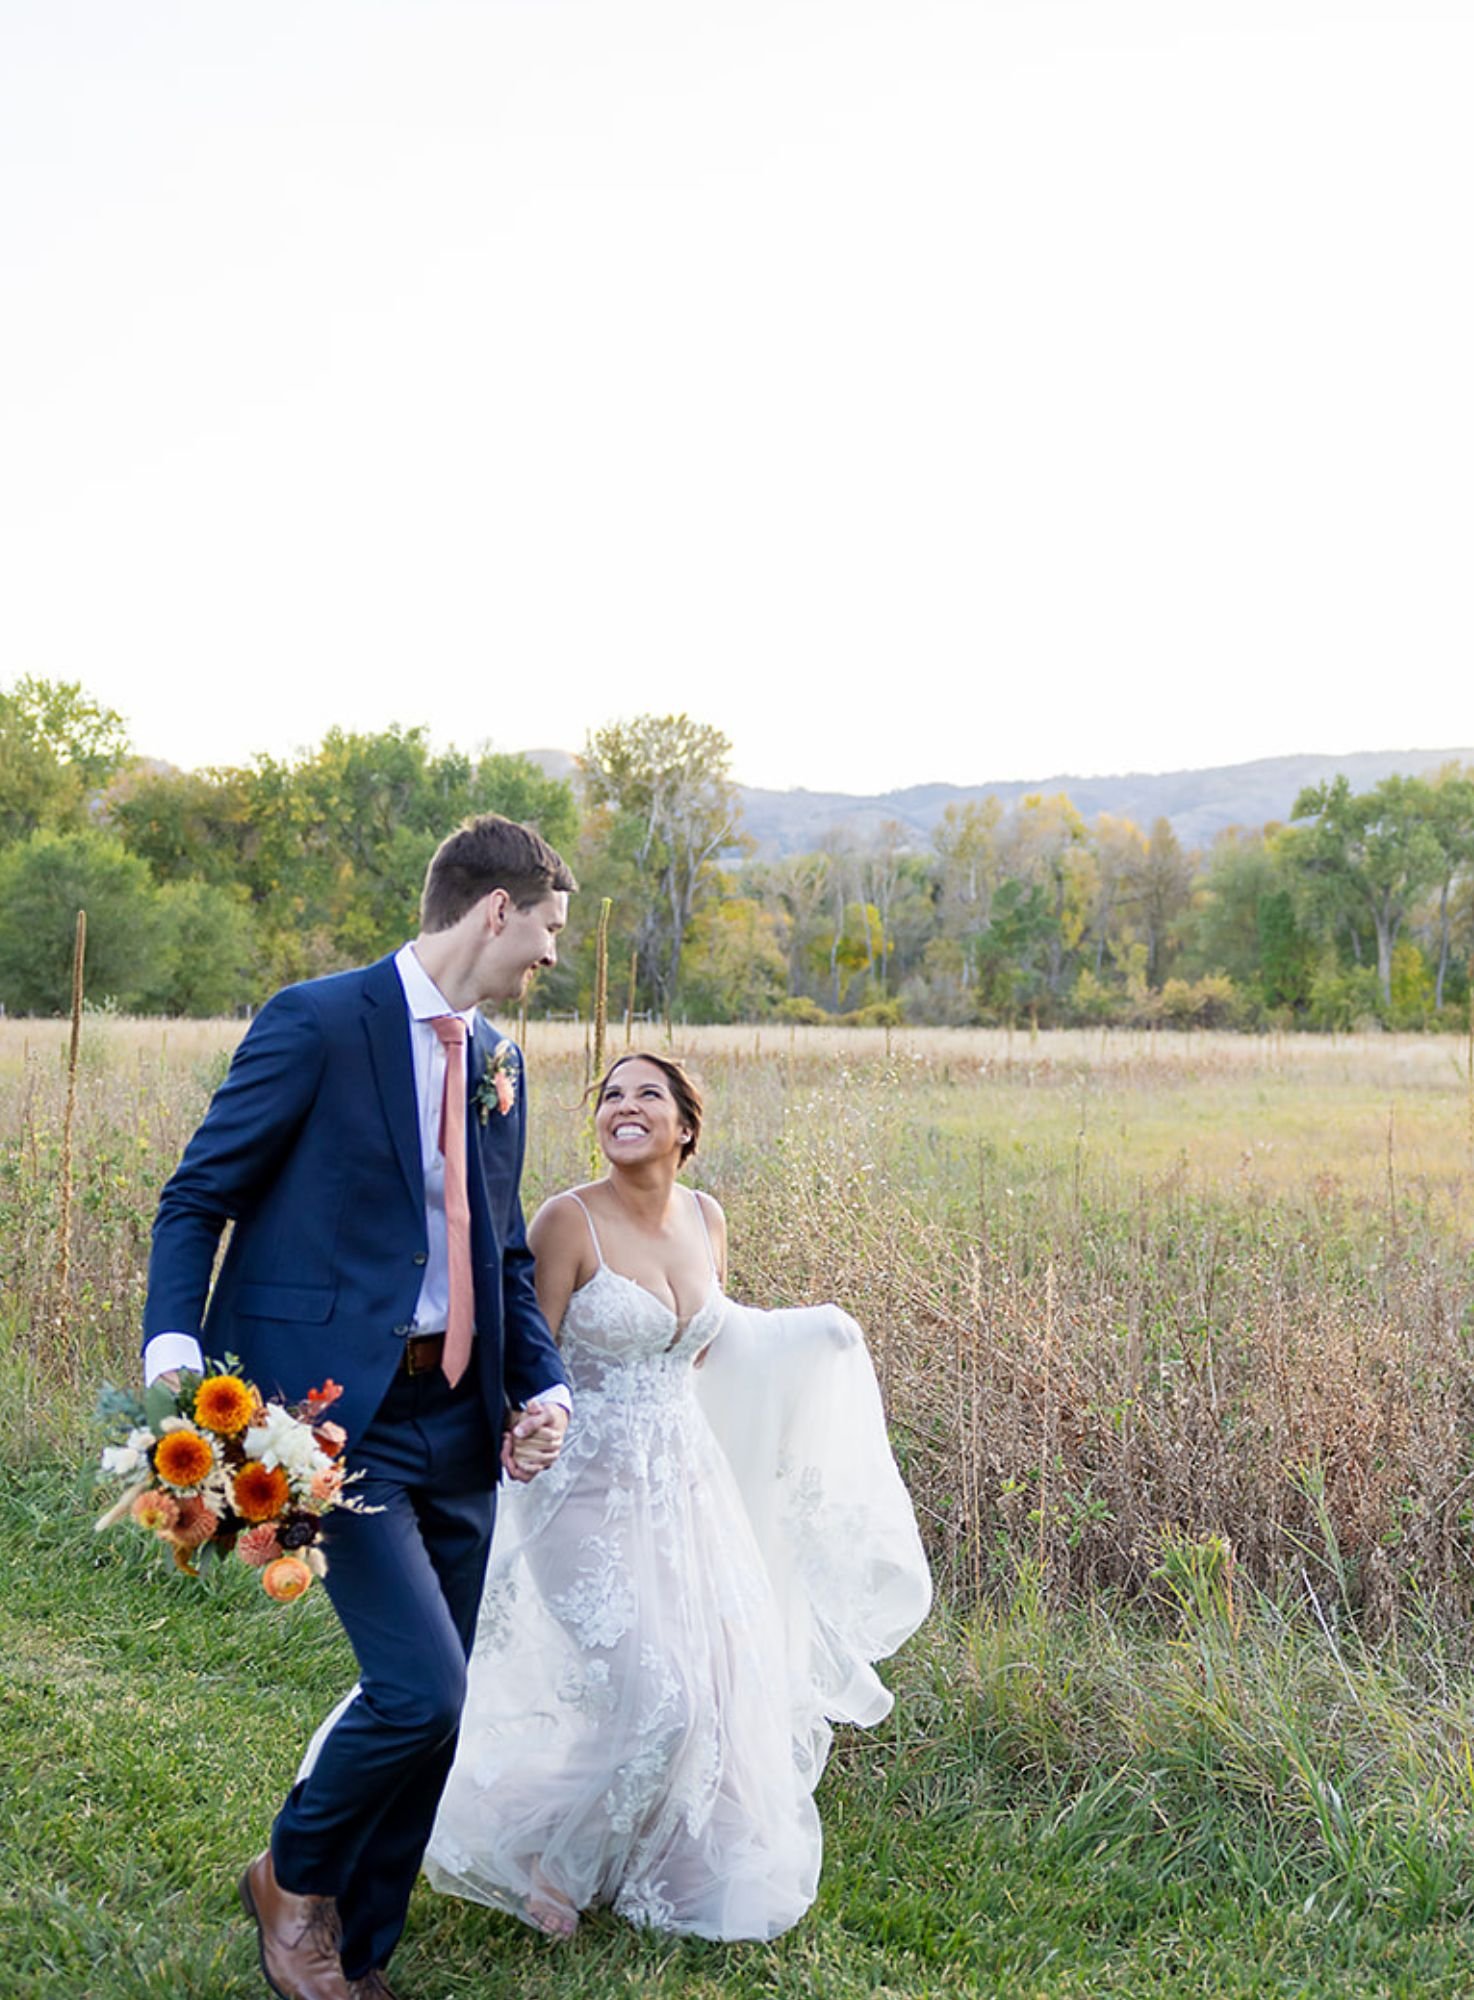 Outdoor wedding ideas on a budget in Colorado